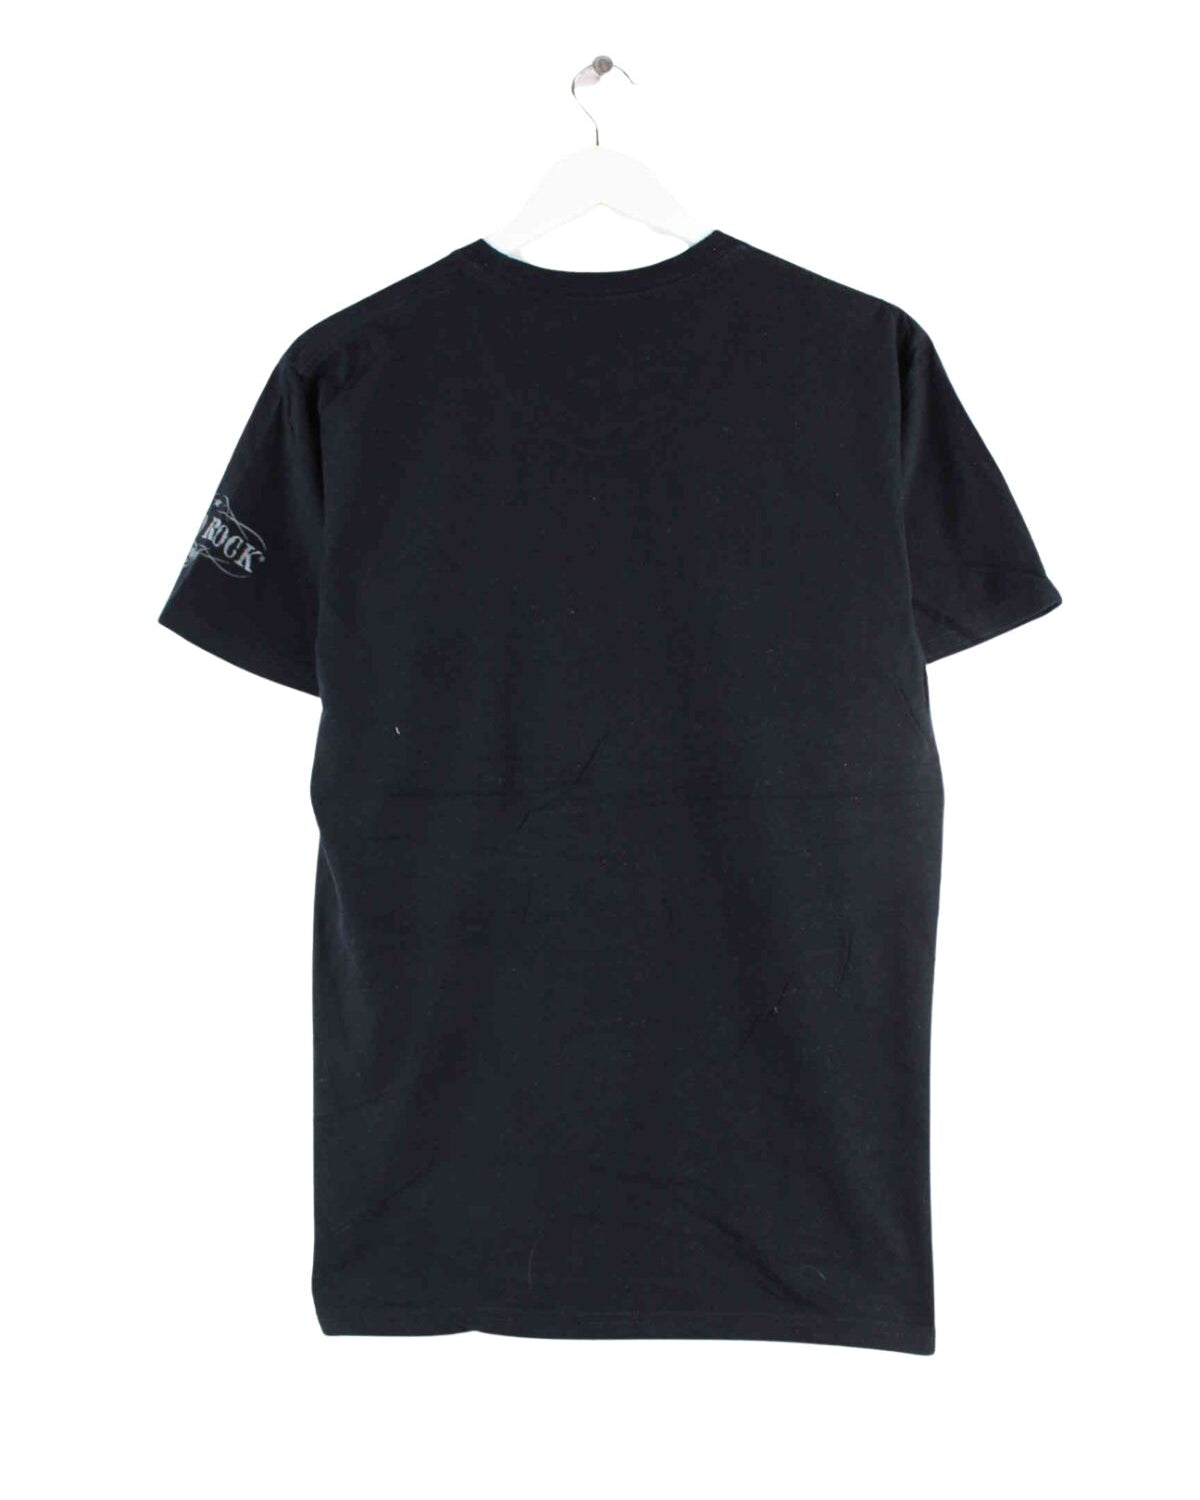 Hard Rock Cafe Print T-Shirt Schwarz M (back image)